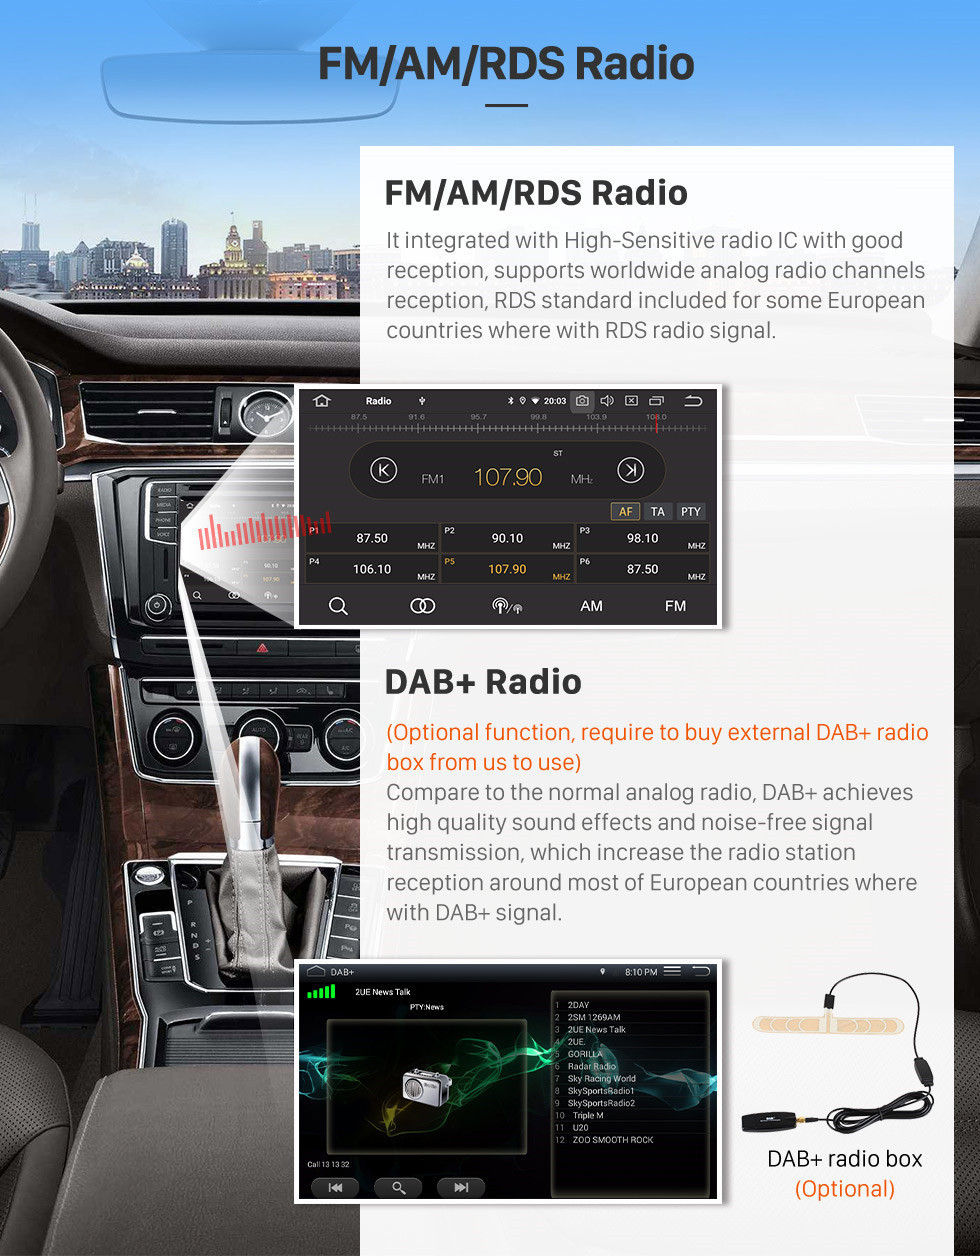 Seicane 9 polegadas Android 11.0 DVD GPS estéreo para Hyundai Elantra LHD 2011 2012 2013 com Rádio Bluetooth Música Carplay OBD2 Controle do volante da câmera de backup